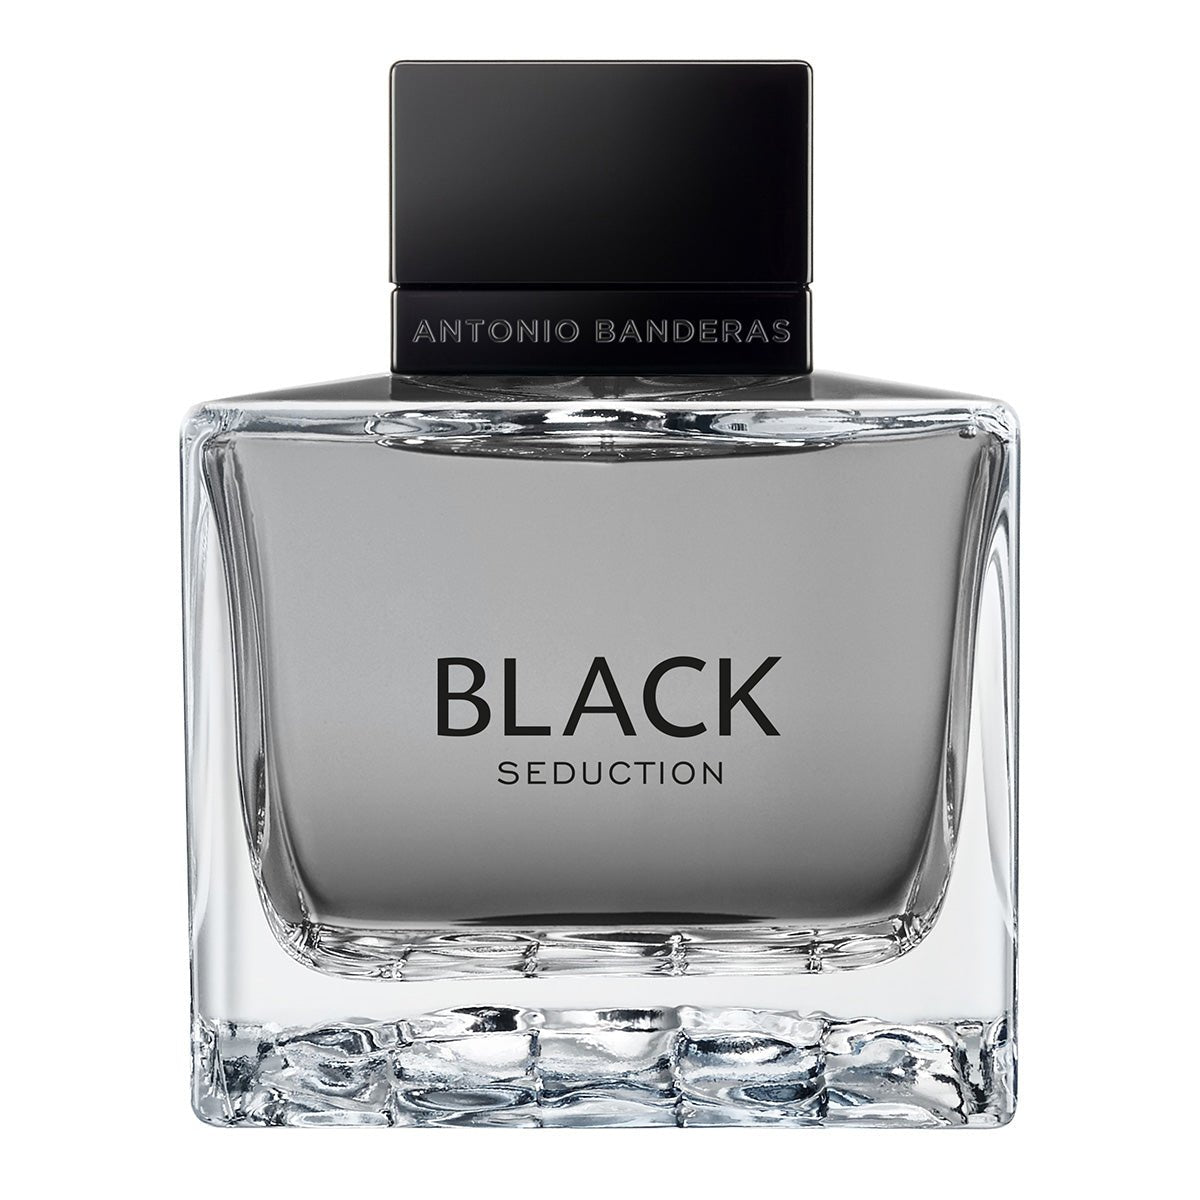 Antonio Banderas Seduction In Black Perfume For Men Eau De Toilette 100ml - AllurebeautypkAntonio Banderas Seduction In Black Perfume For Men Eau De Toilette 100ml